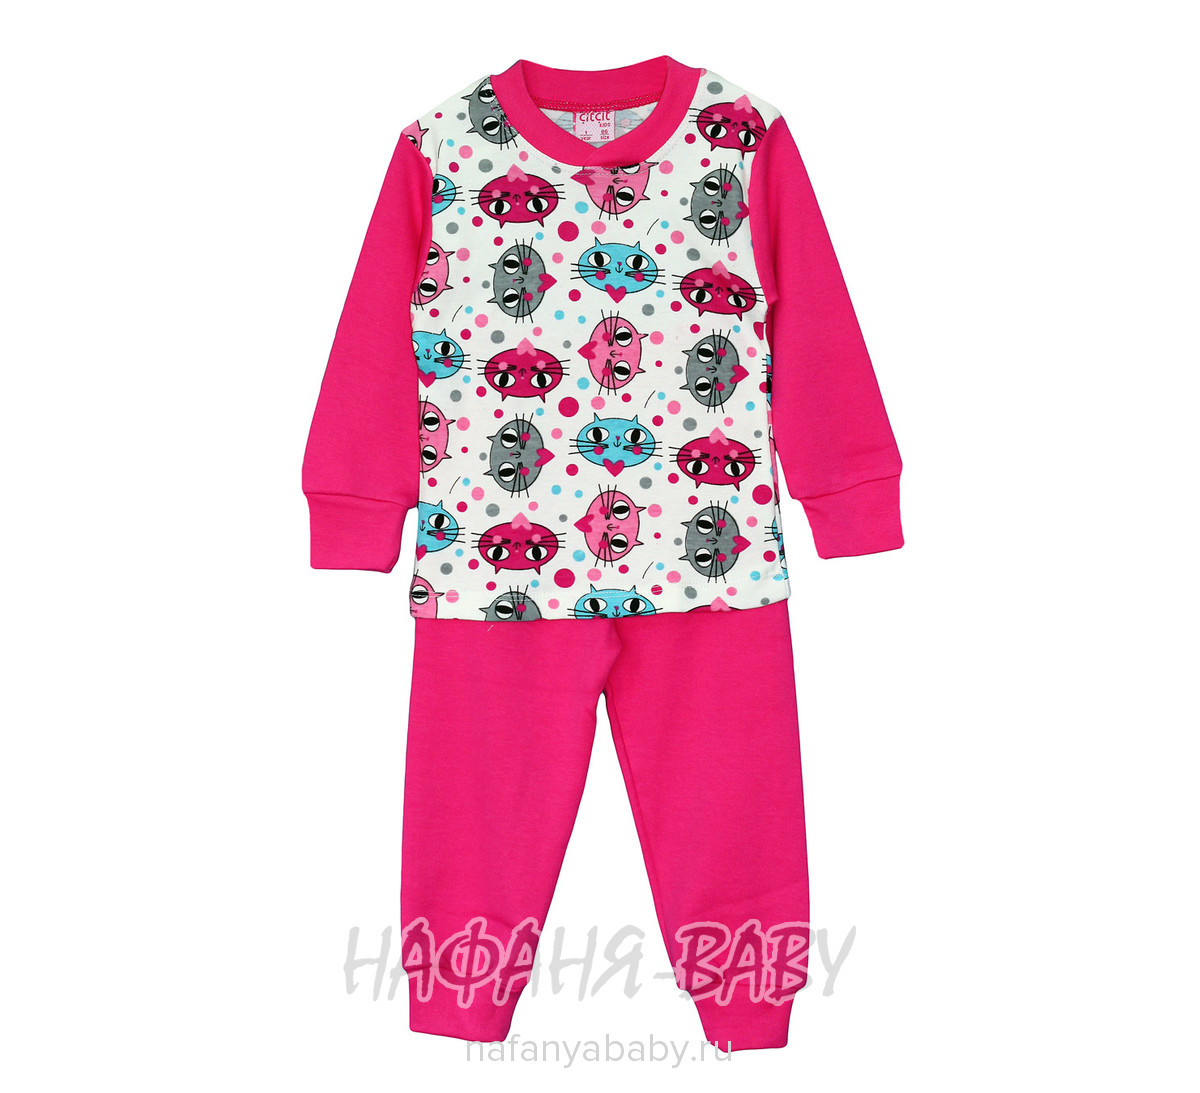 Детская пижама для девочки Cit Cit, купить в интернет магазине Нафаня. арт: 2203.